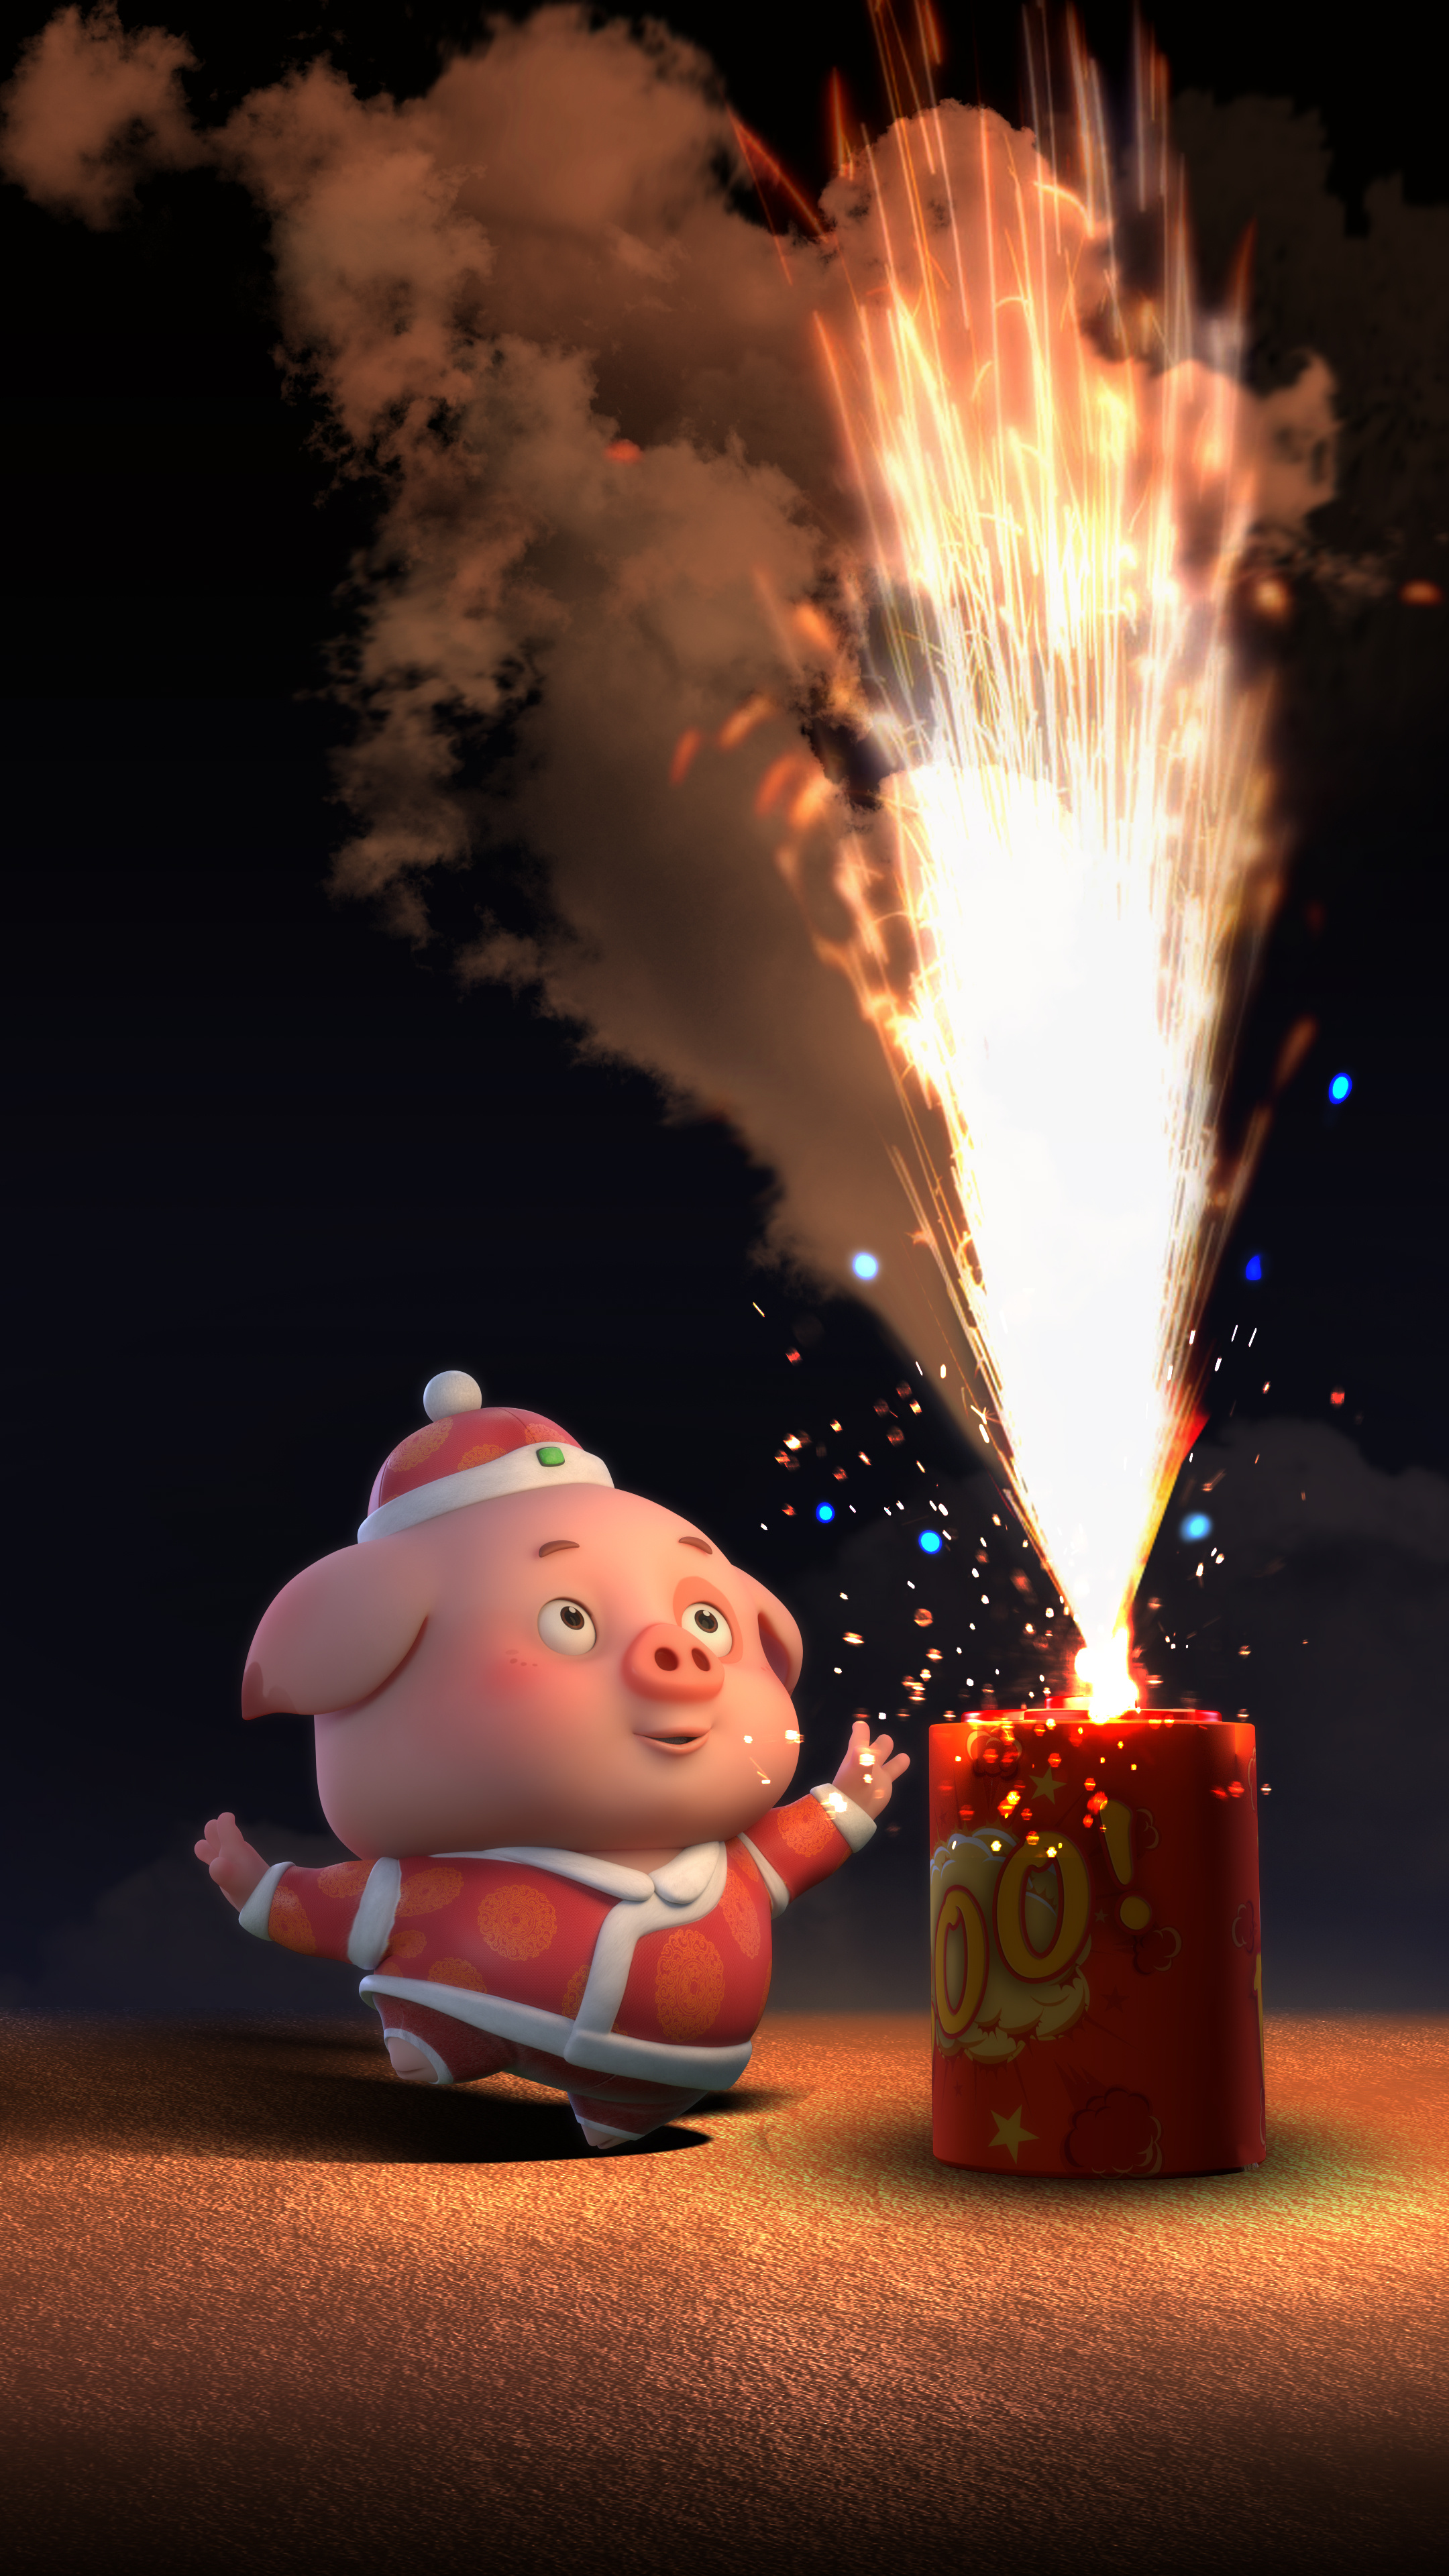 豆豆猪新年壁纸:承包你整个猪年的手机壁纸!